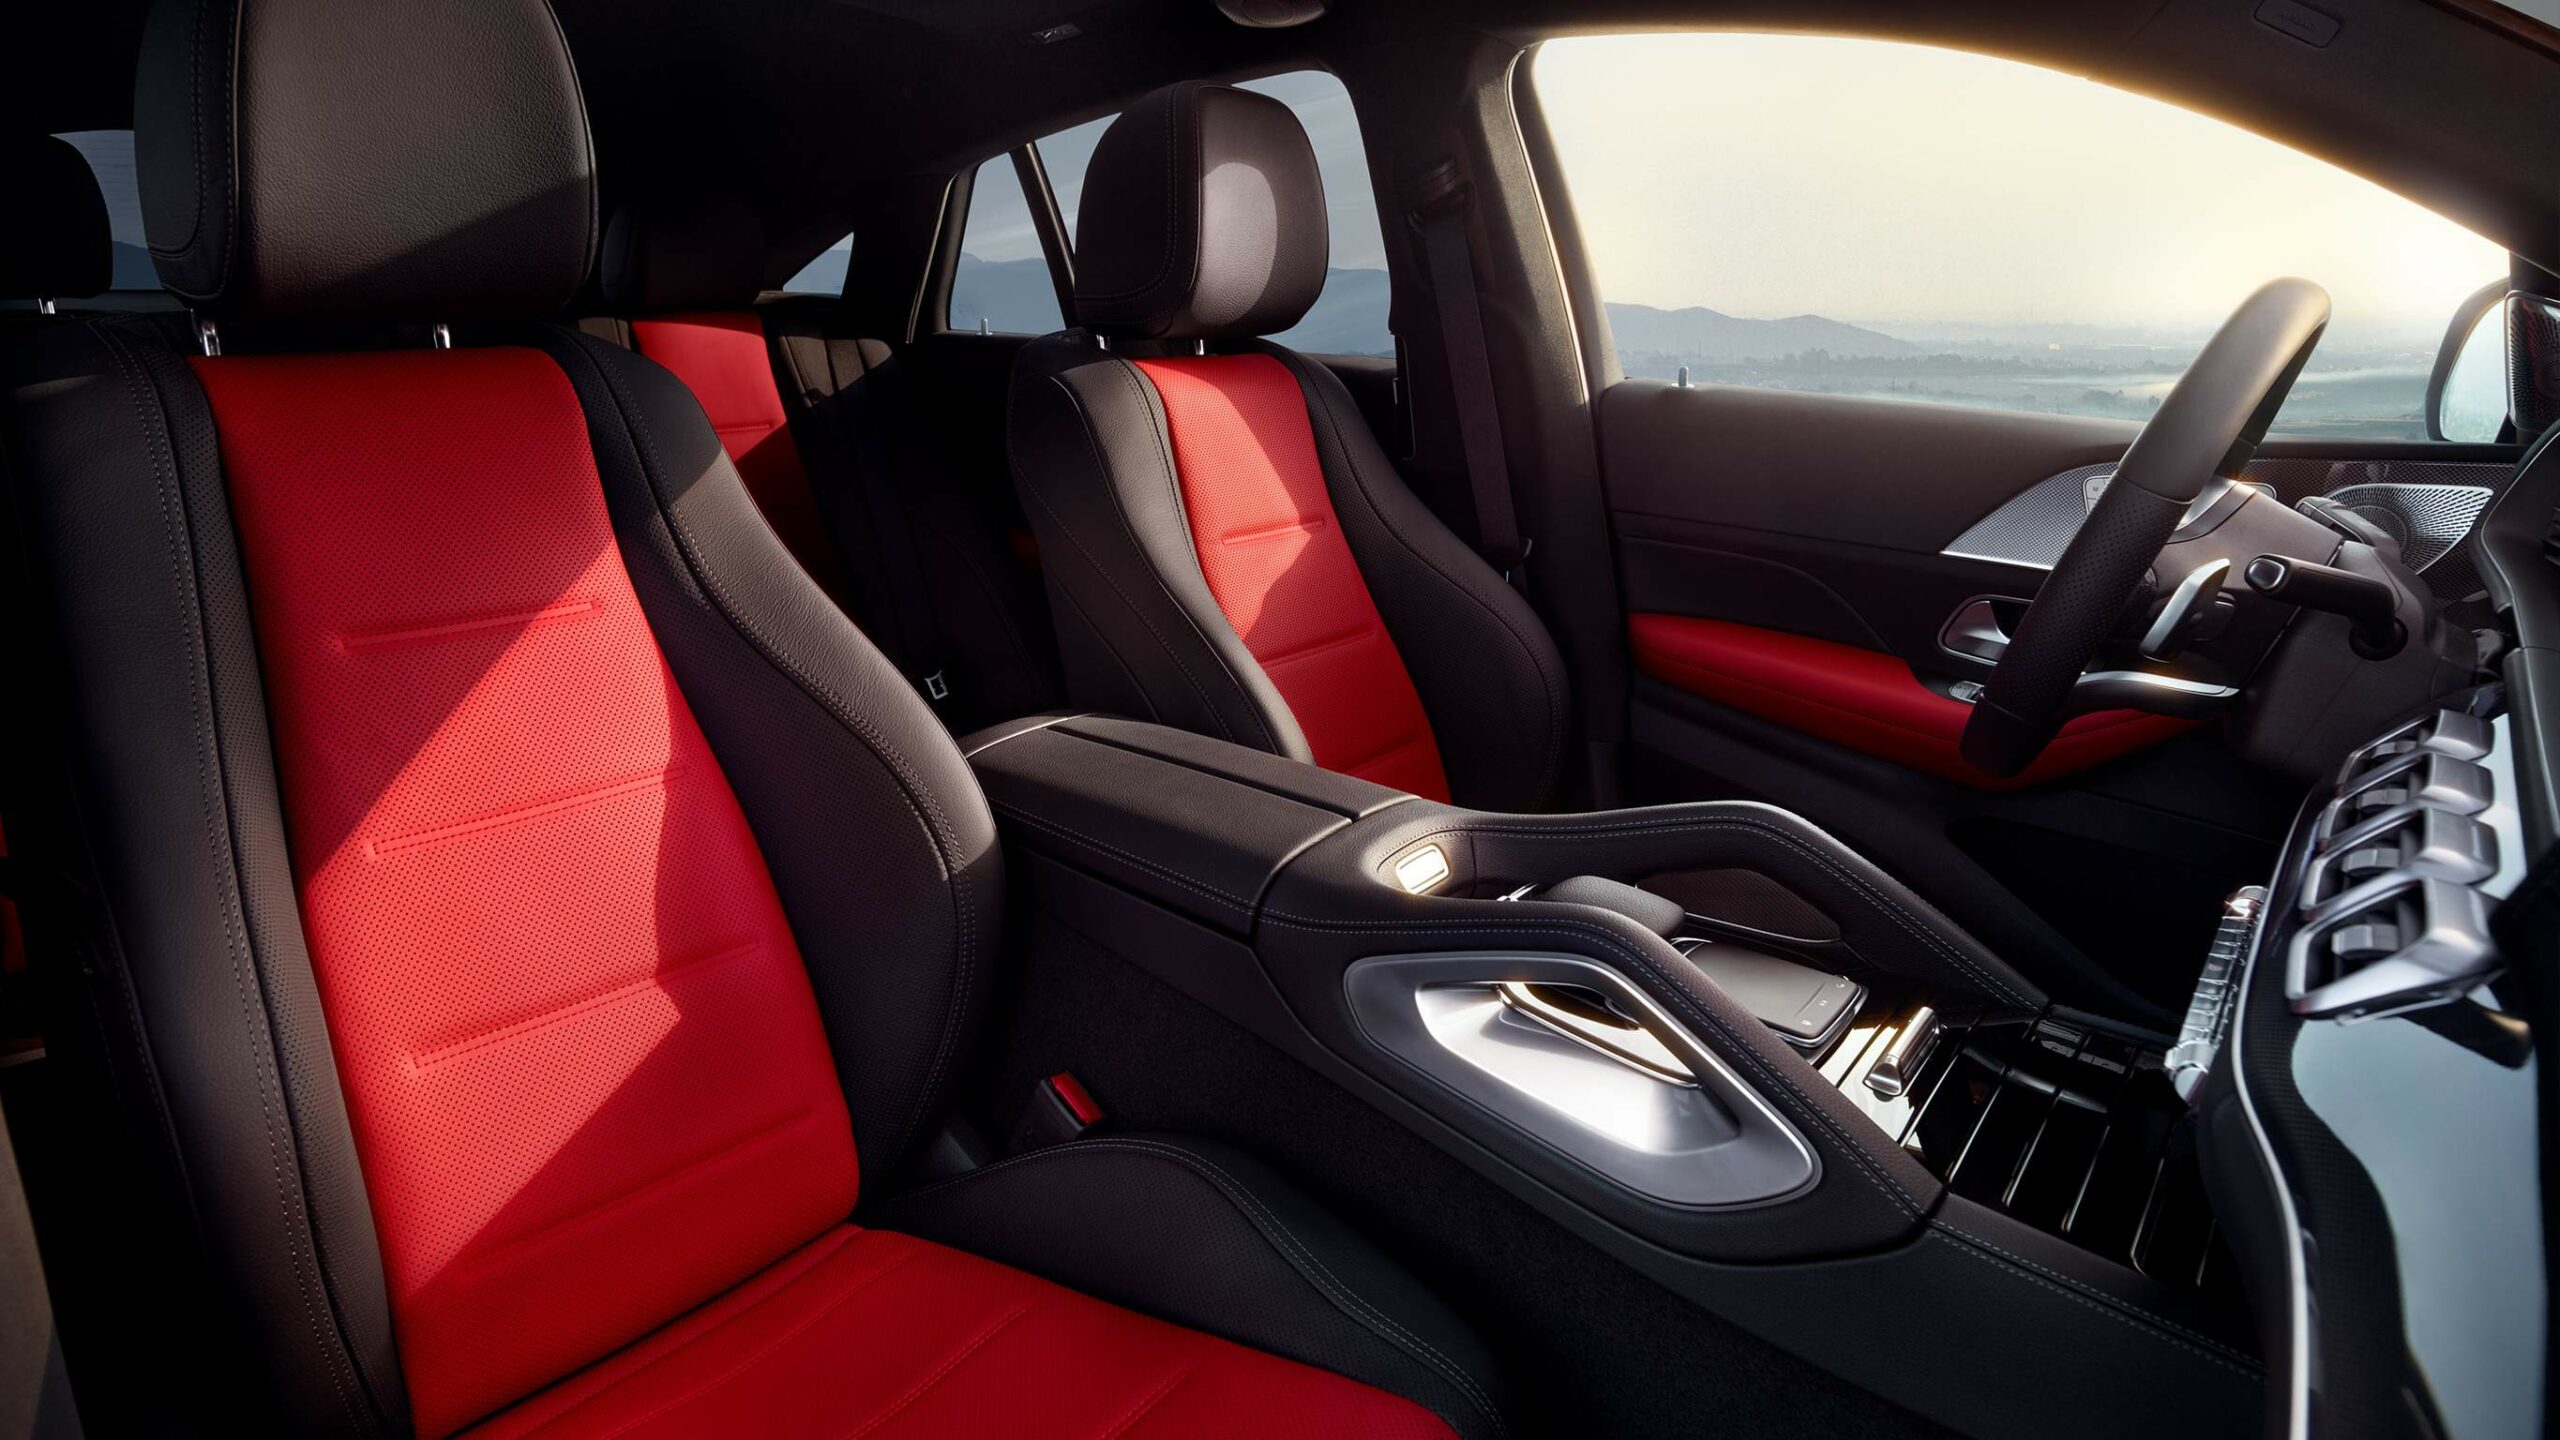 Mercedes-Benz GLE Coupe, asientos rojos y negros